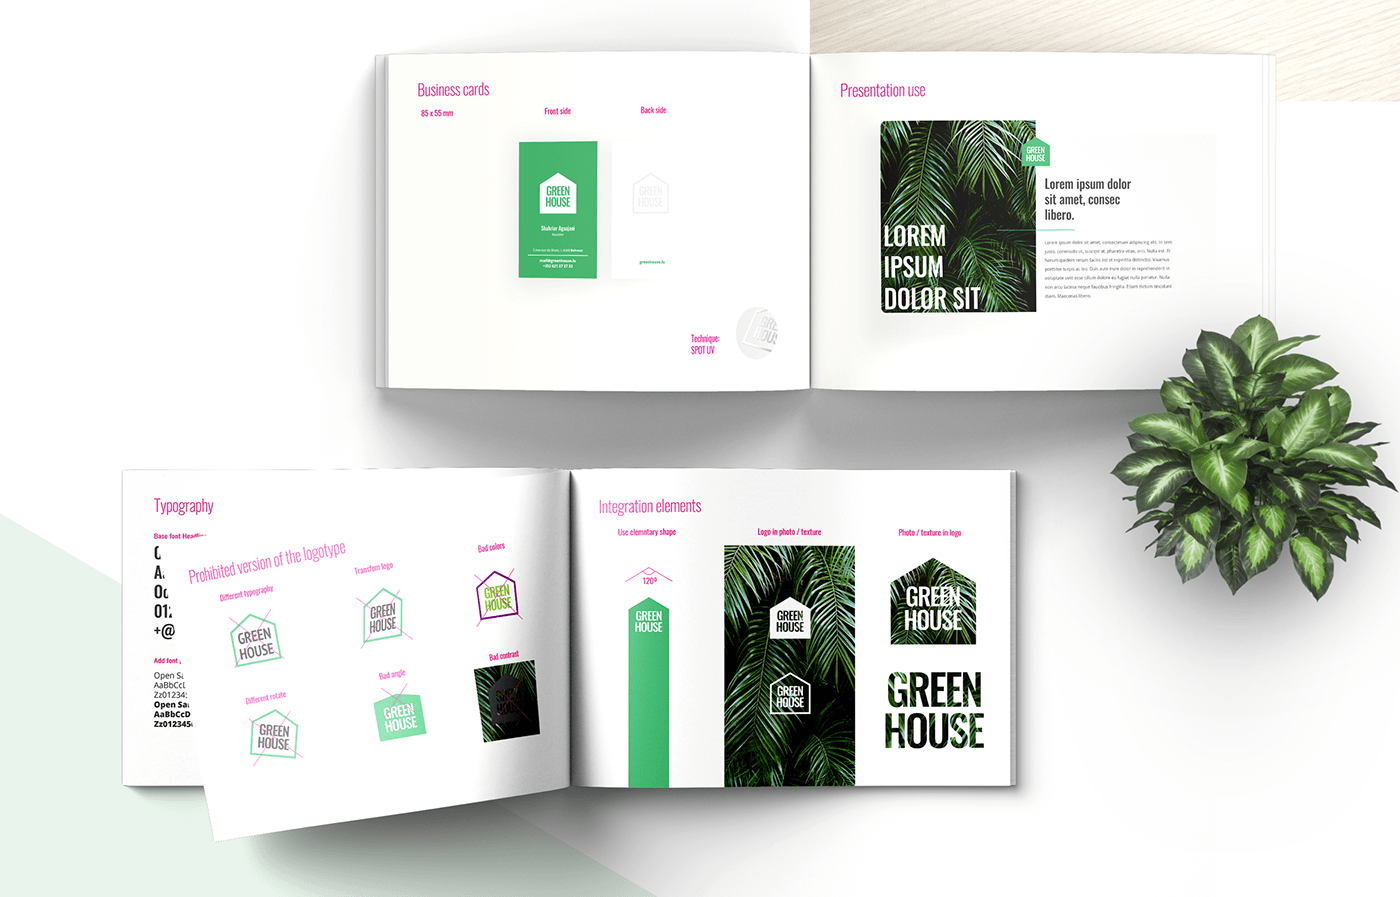 design green wall logo Logotype luxembourg marketing   Visual Communication Web